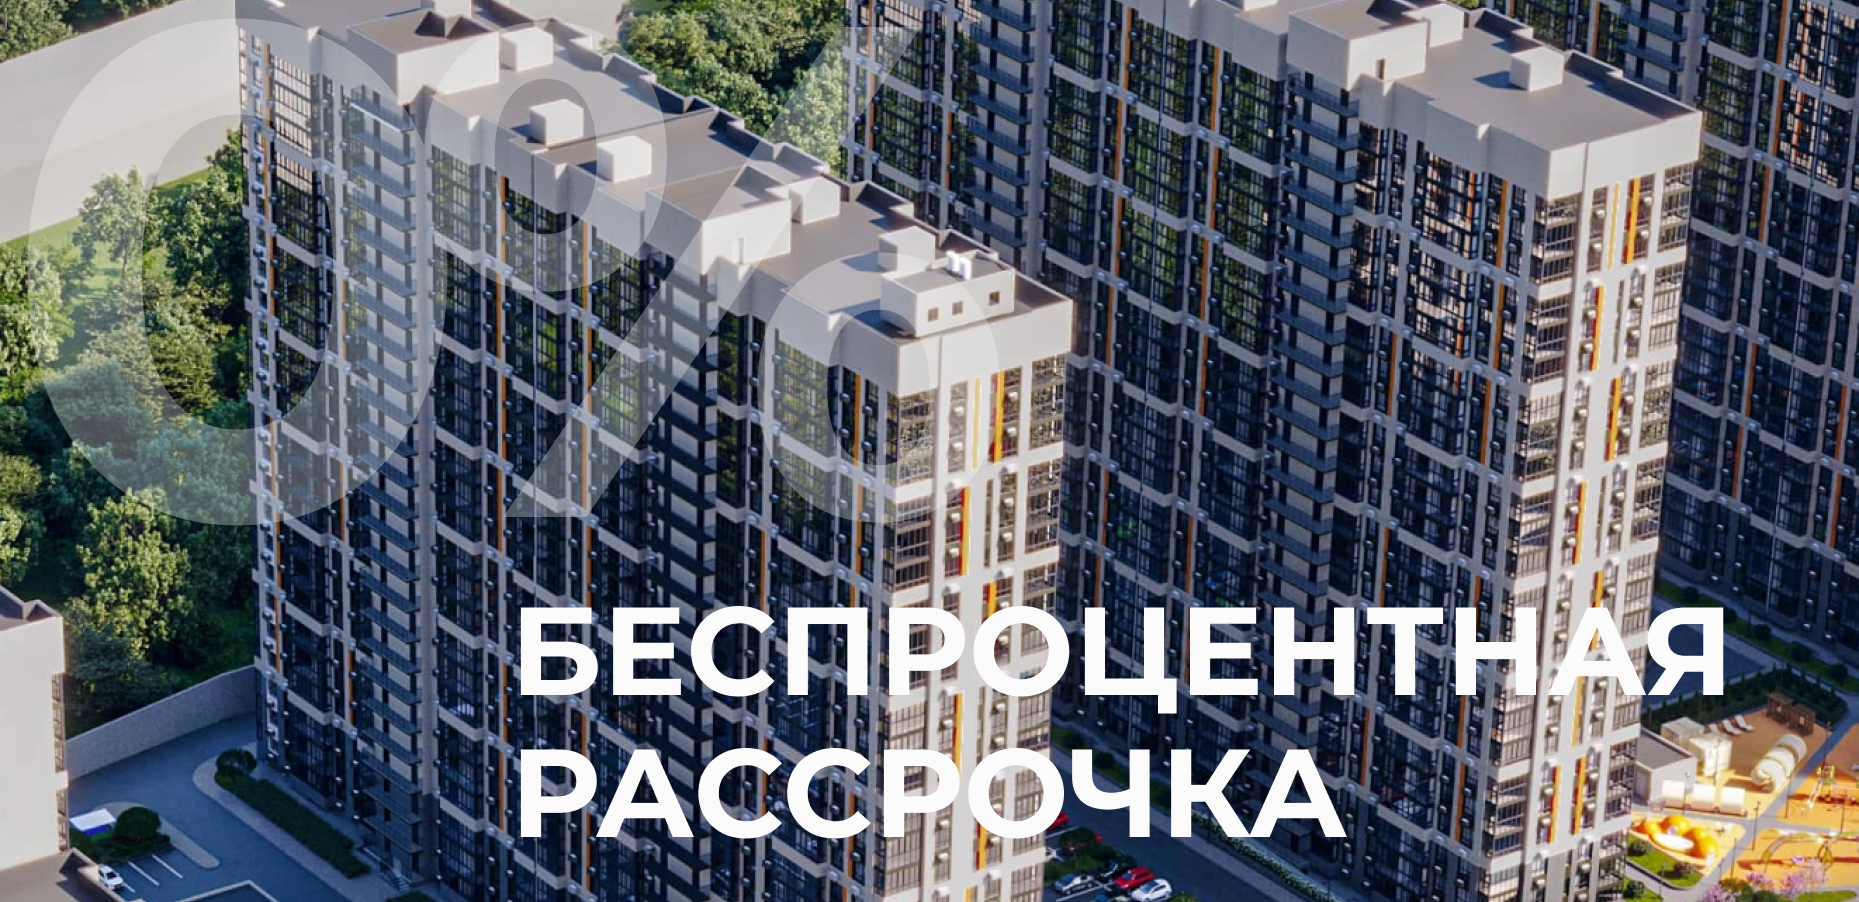 Беспроцентная рассрочка без удорожания с первоначальным взносом от 30% на срок до 1,5 лет при покупке квартир в ЖК "Текучев"!